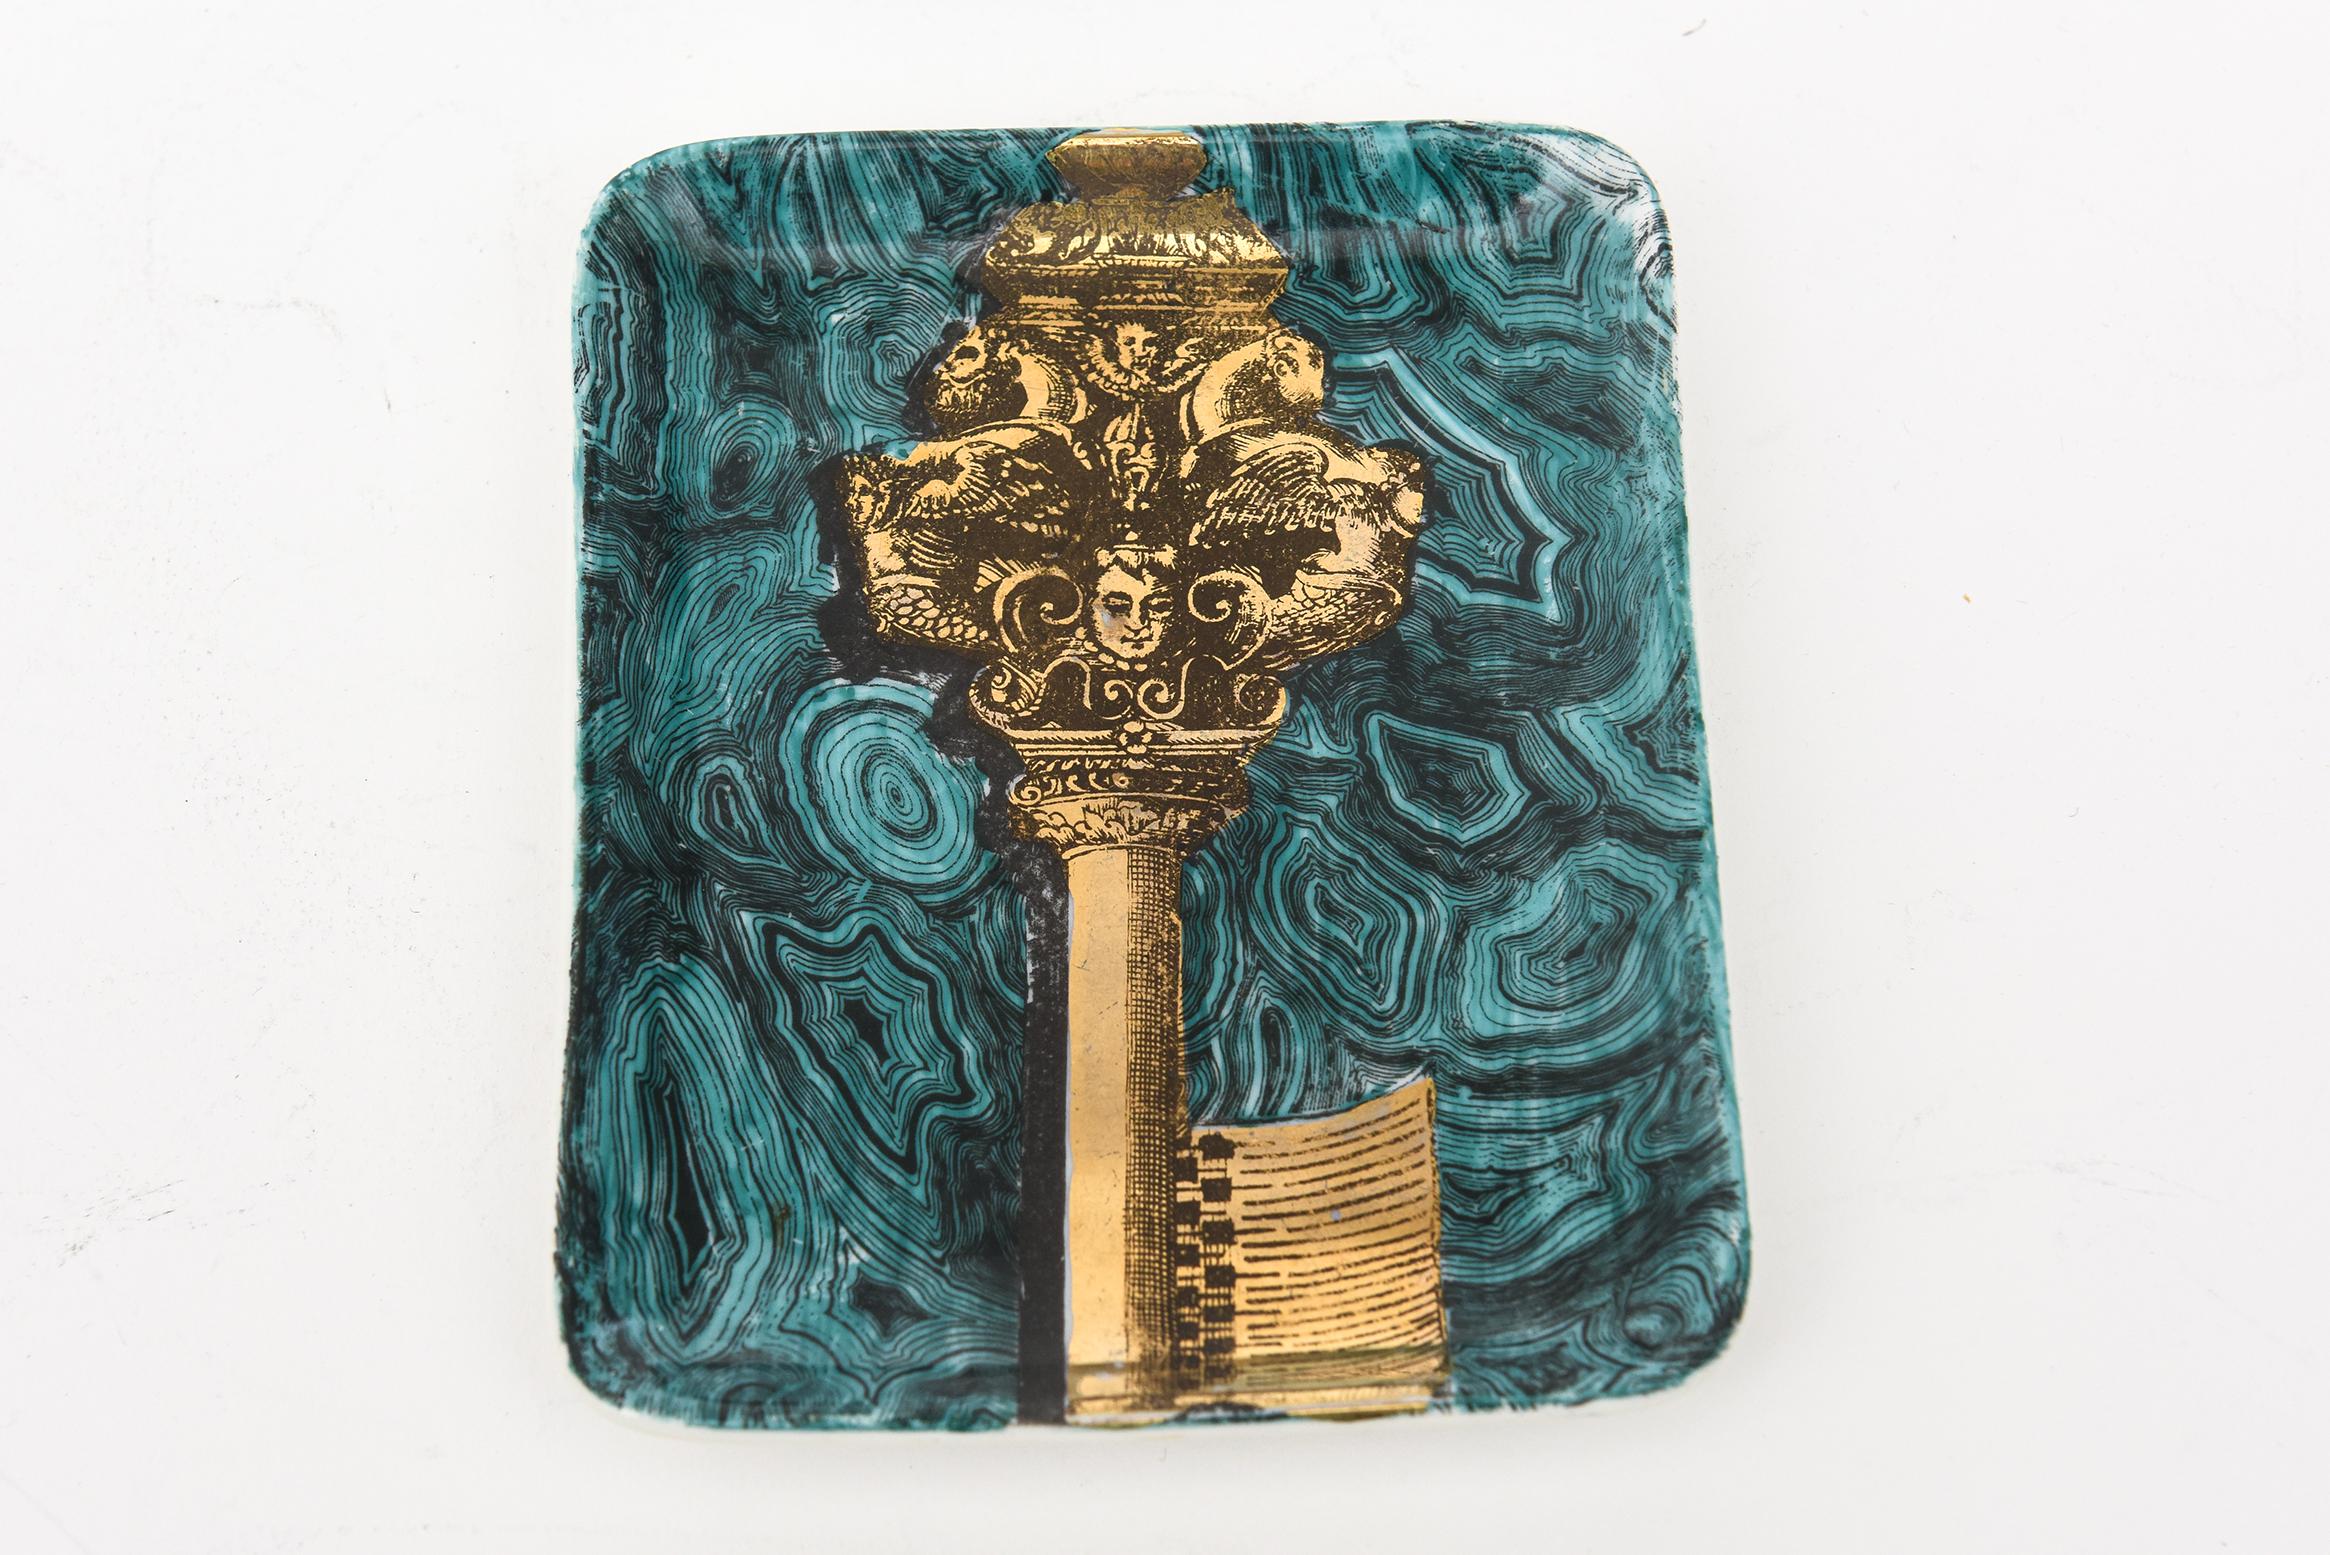 Diese ungewöhnliche Vintage Piero Fornasetti kleine Porzellan-Tablett oder Schale hat das Motiv und Thema einer vergoldeten Schlüssel zwischen Strudeln von faux teal grün türkis Malachit. Dies ist ein großer Ring oder kleines Tablett und aus den